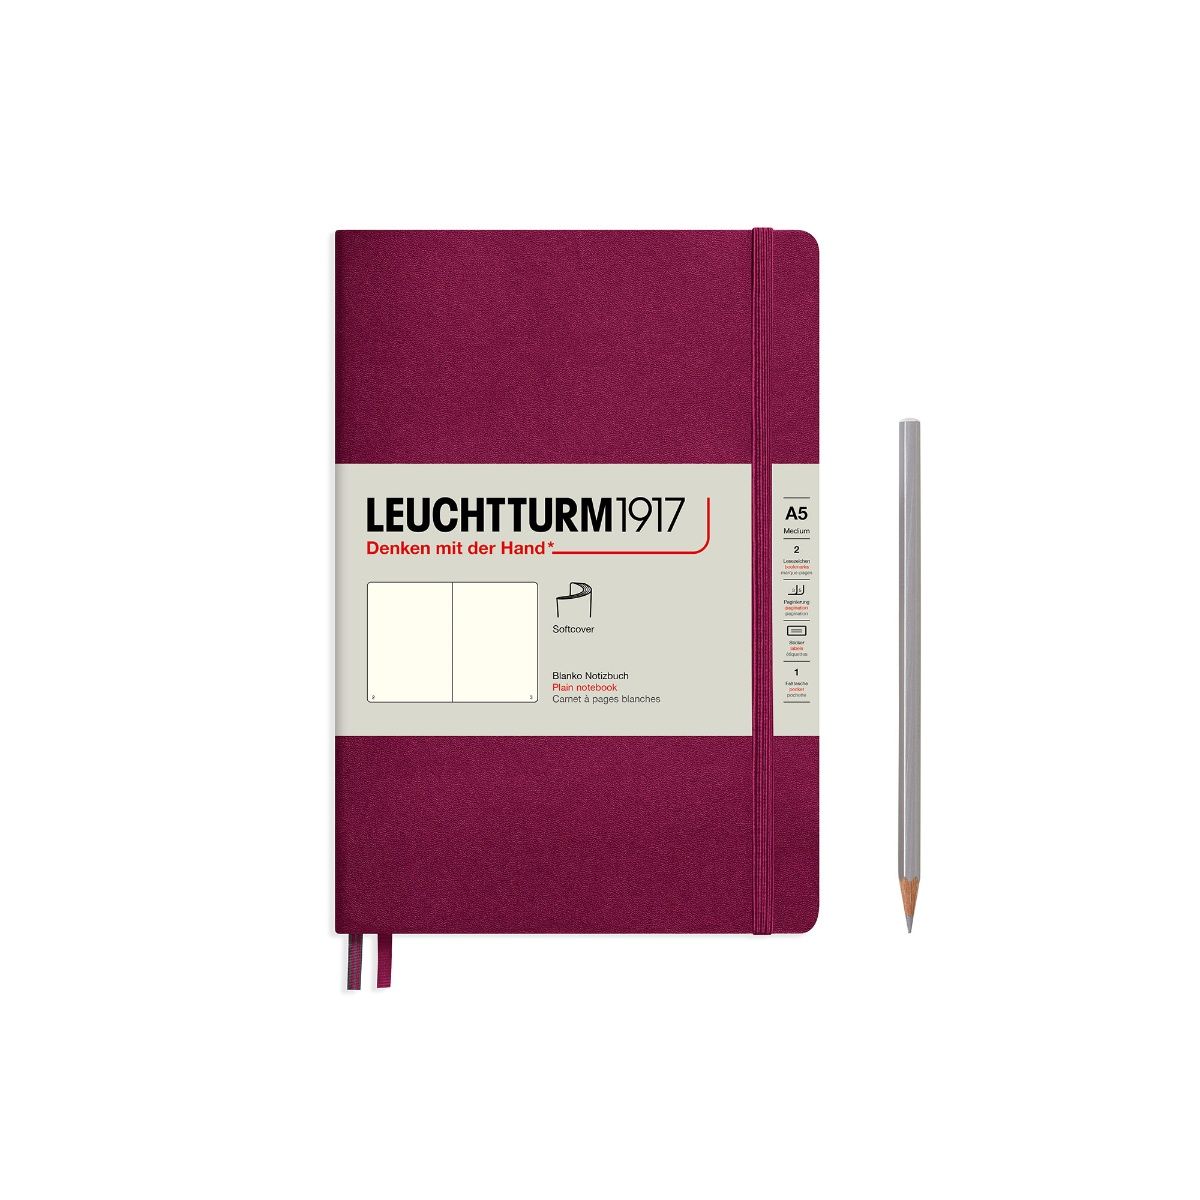 Leuchtturm1917 Medium A5-Size Soft Cover Notebook (Plain) - Port Red